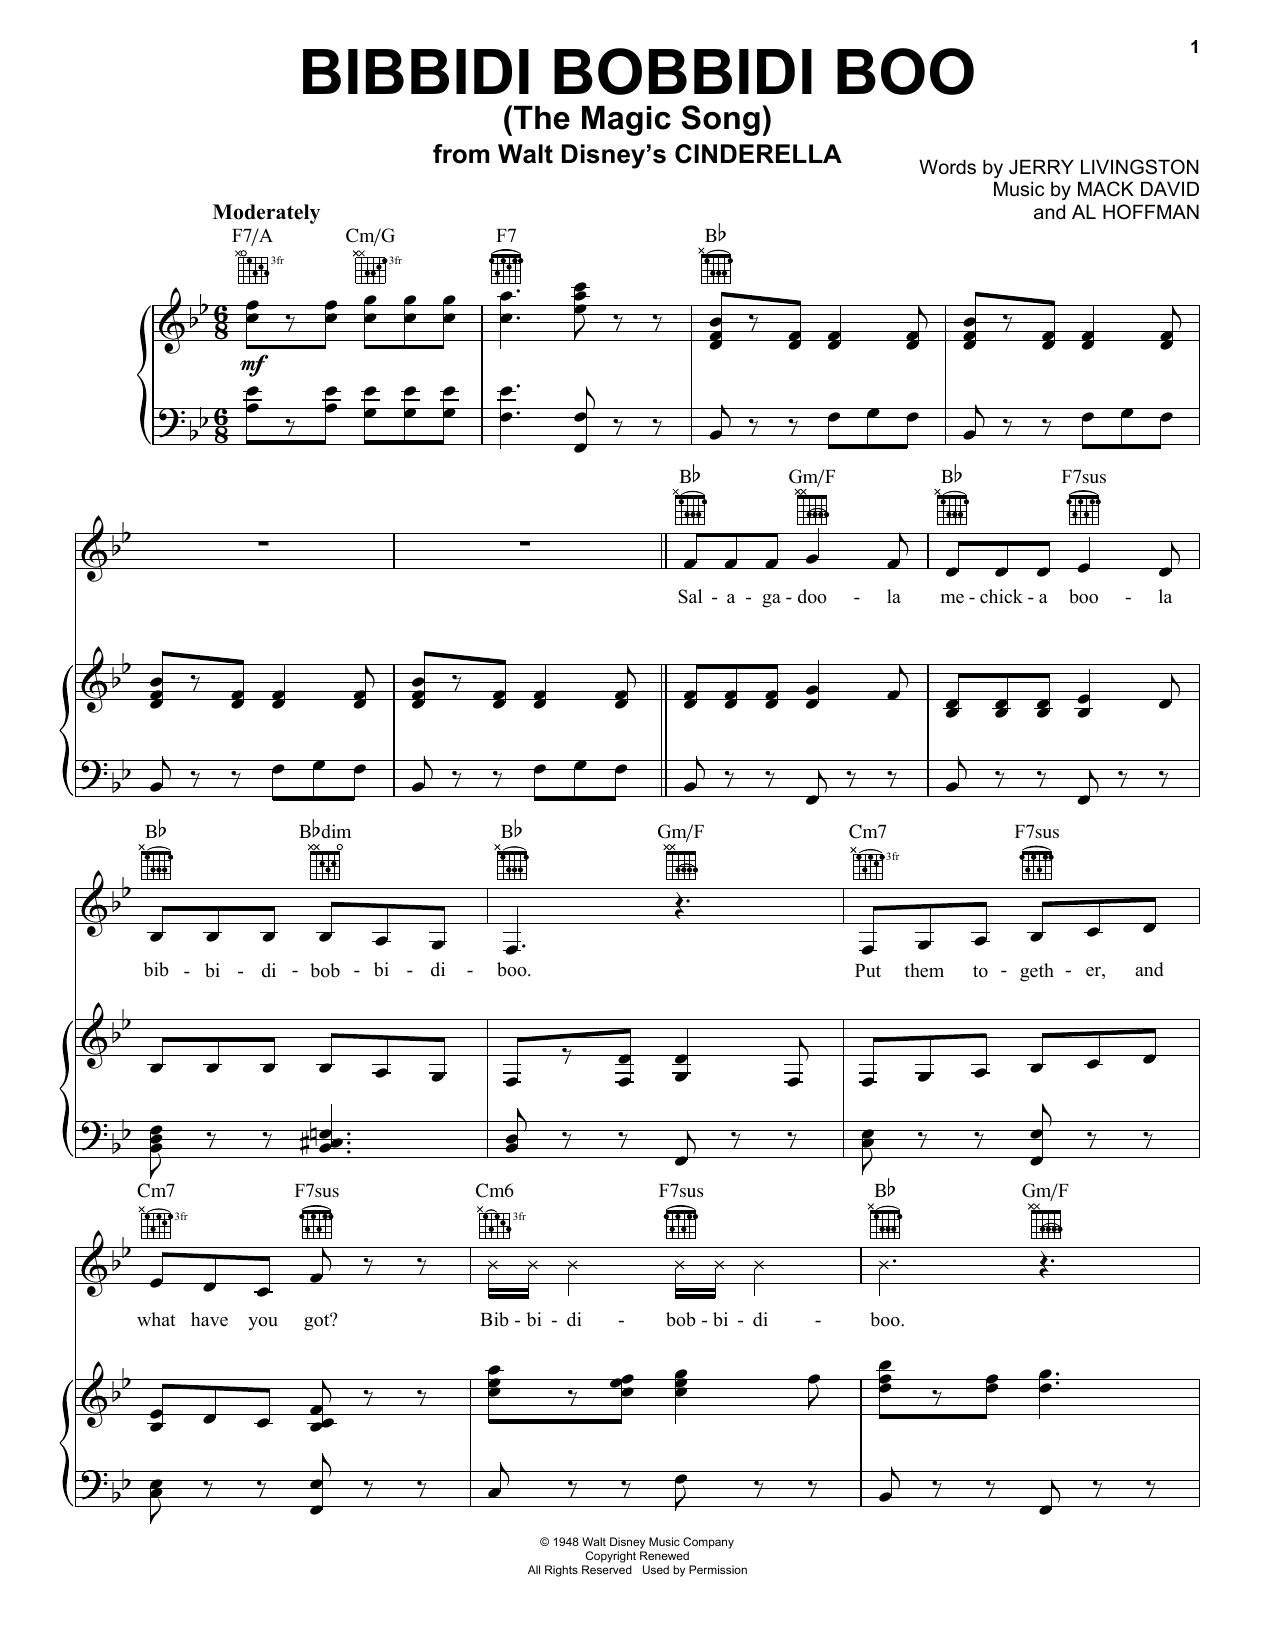 Mack David Bibbidi-Bobbidi-Boo (The Magic Song) Sheet Music Notes & Chords for Piano, Vocal & Guitar (Right-Hand Melody) - Download or Print PDF